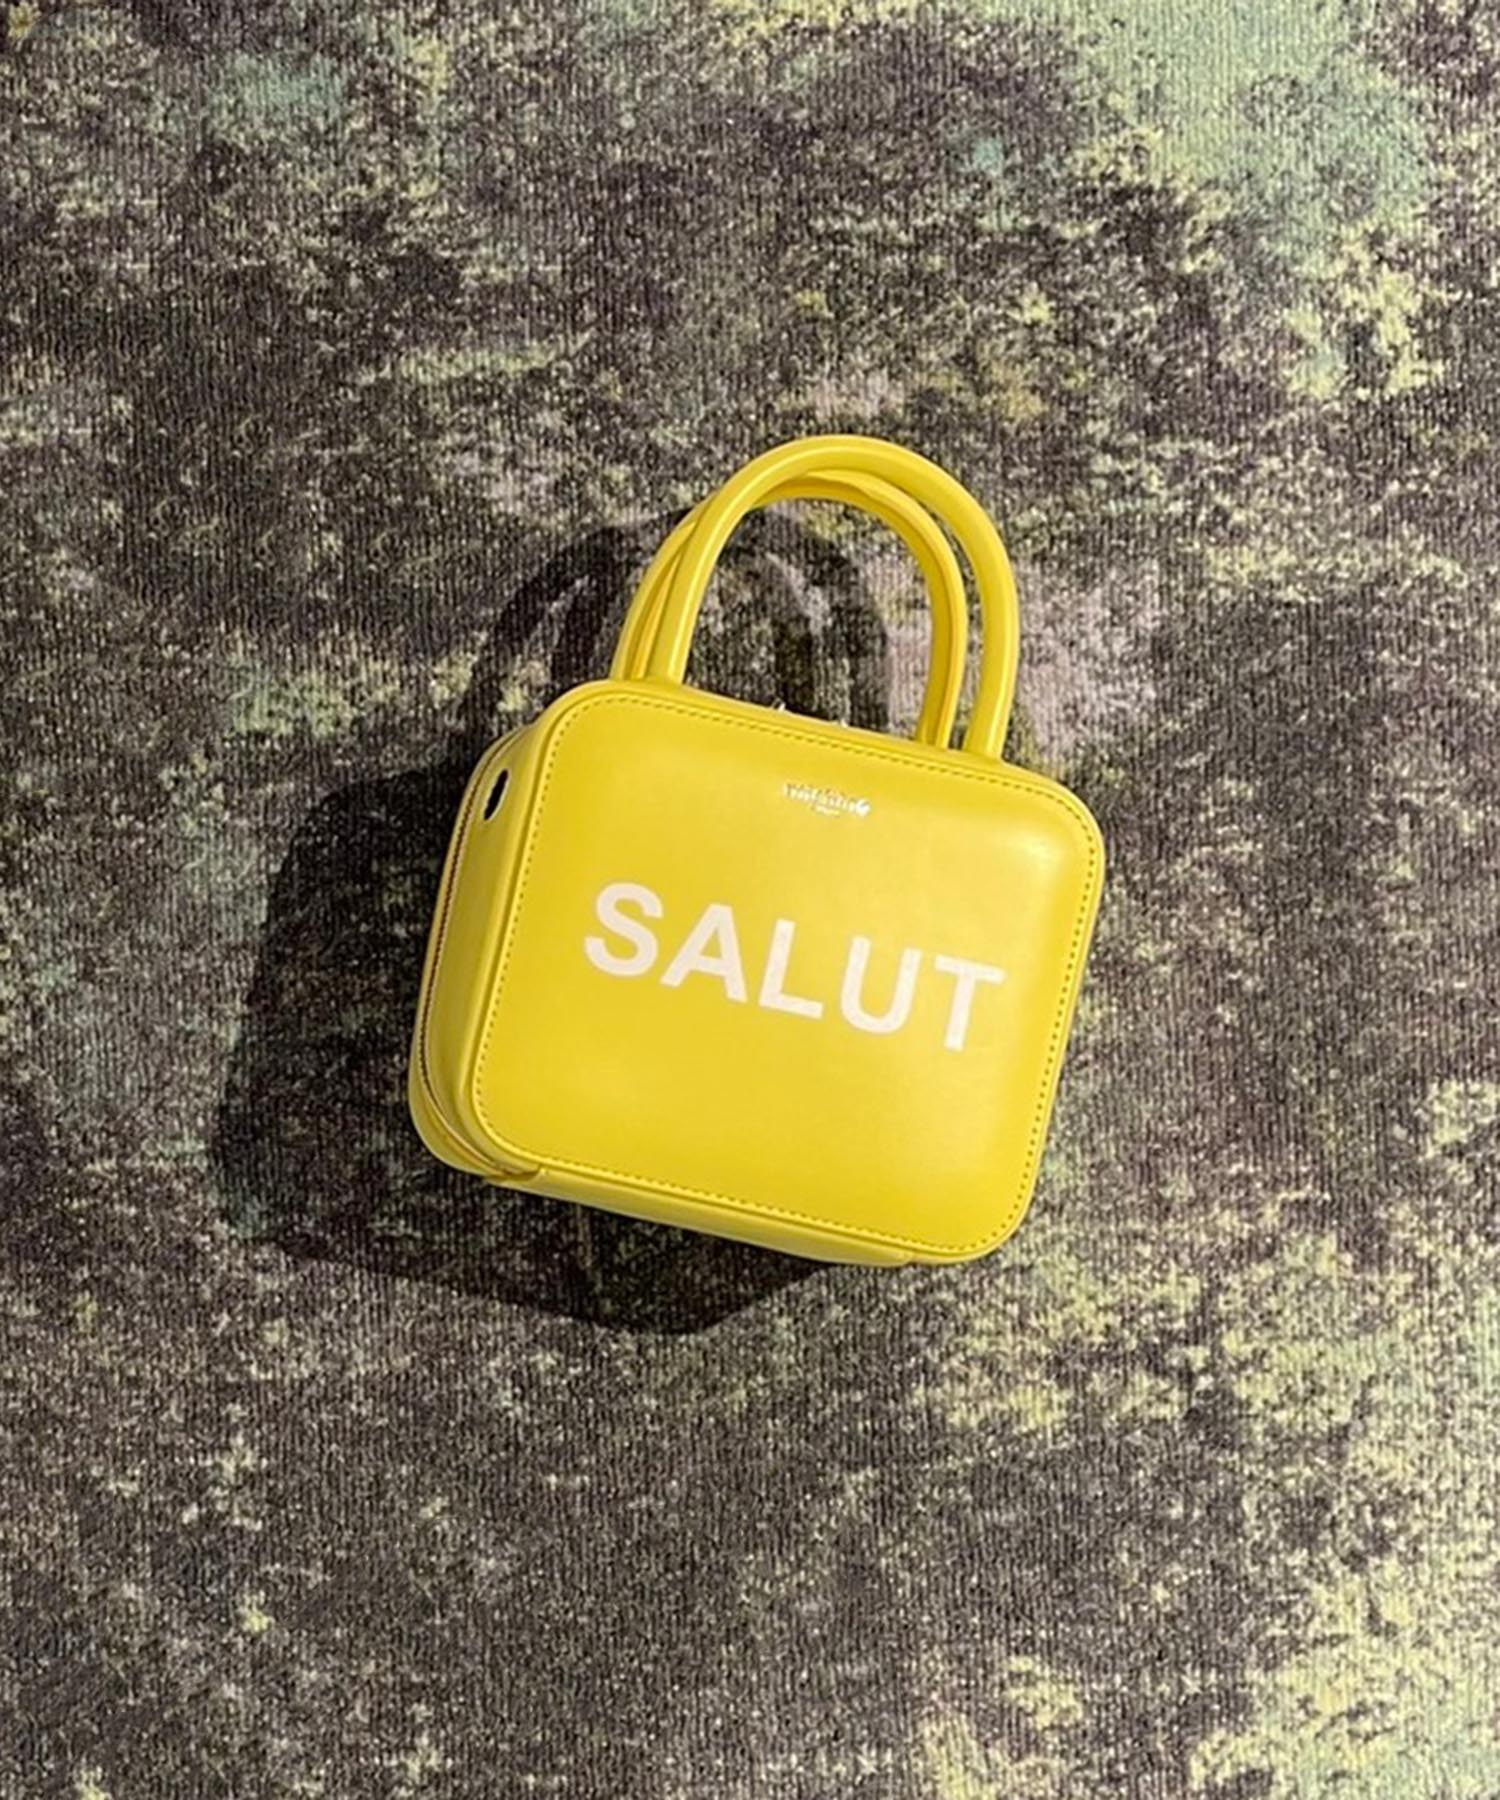 Squarit Mini SALUT　YELLOW